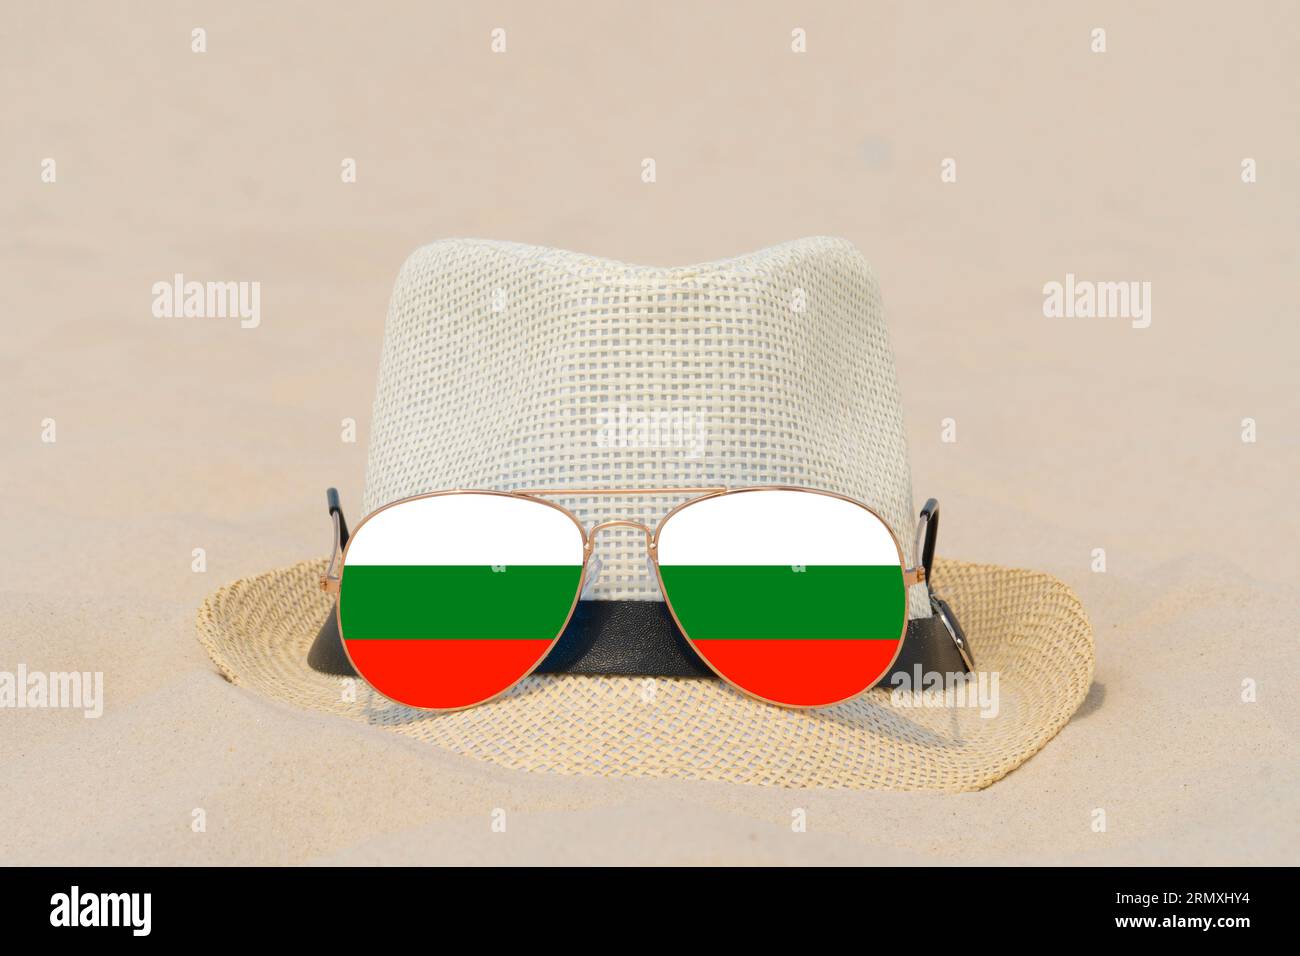 Sonnenbrillen mit Gläsern in Form einer bulgarischen Flagge und einem Hut liegen auf Sand. Konzept der Sommerferien und Reisen in Bulgarien. Sommerruhe Stockfoto